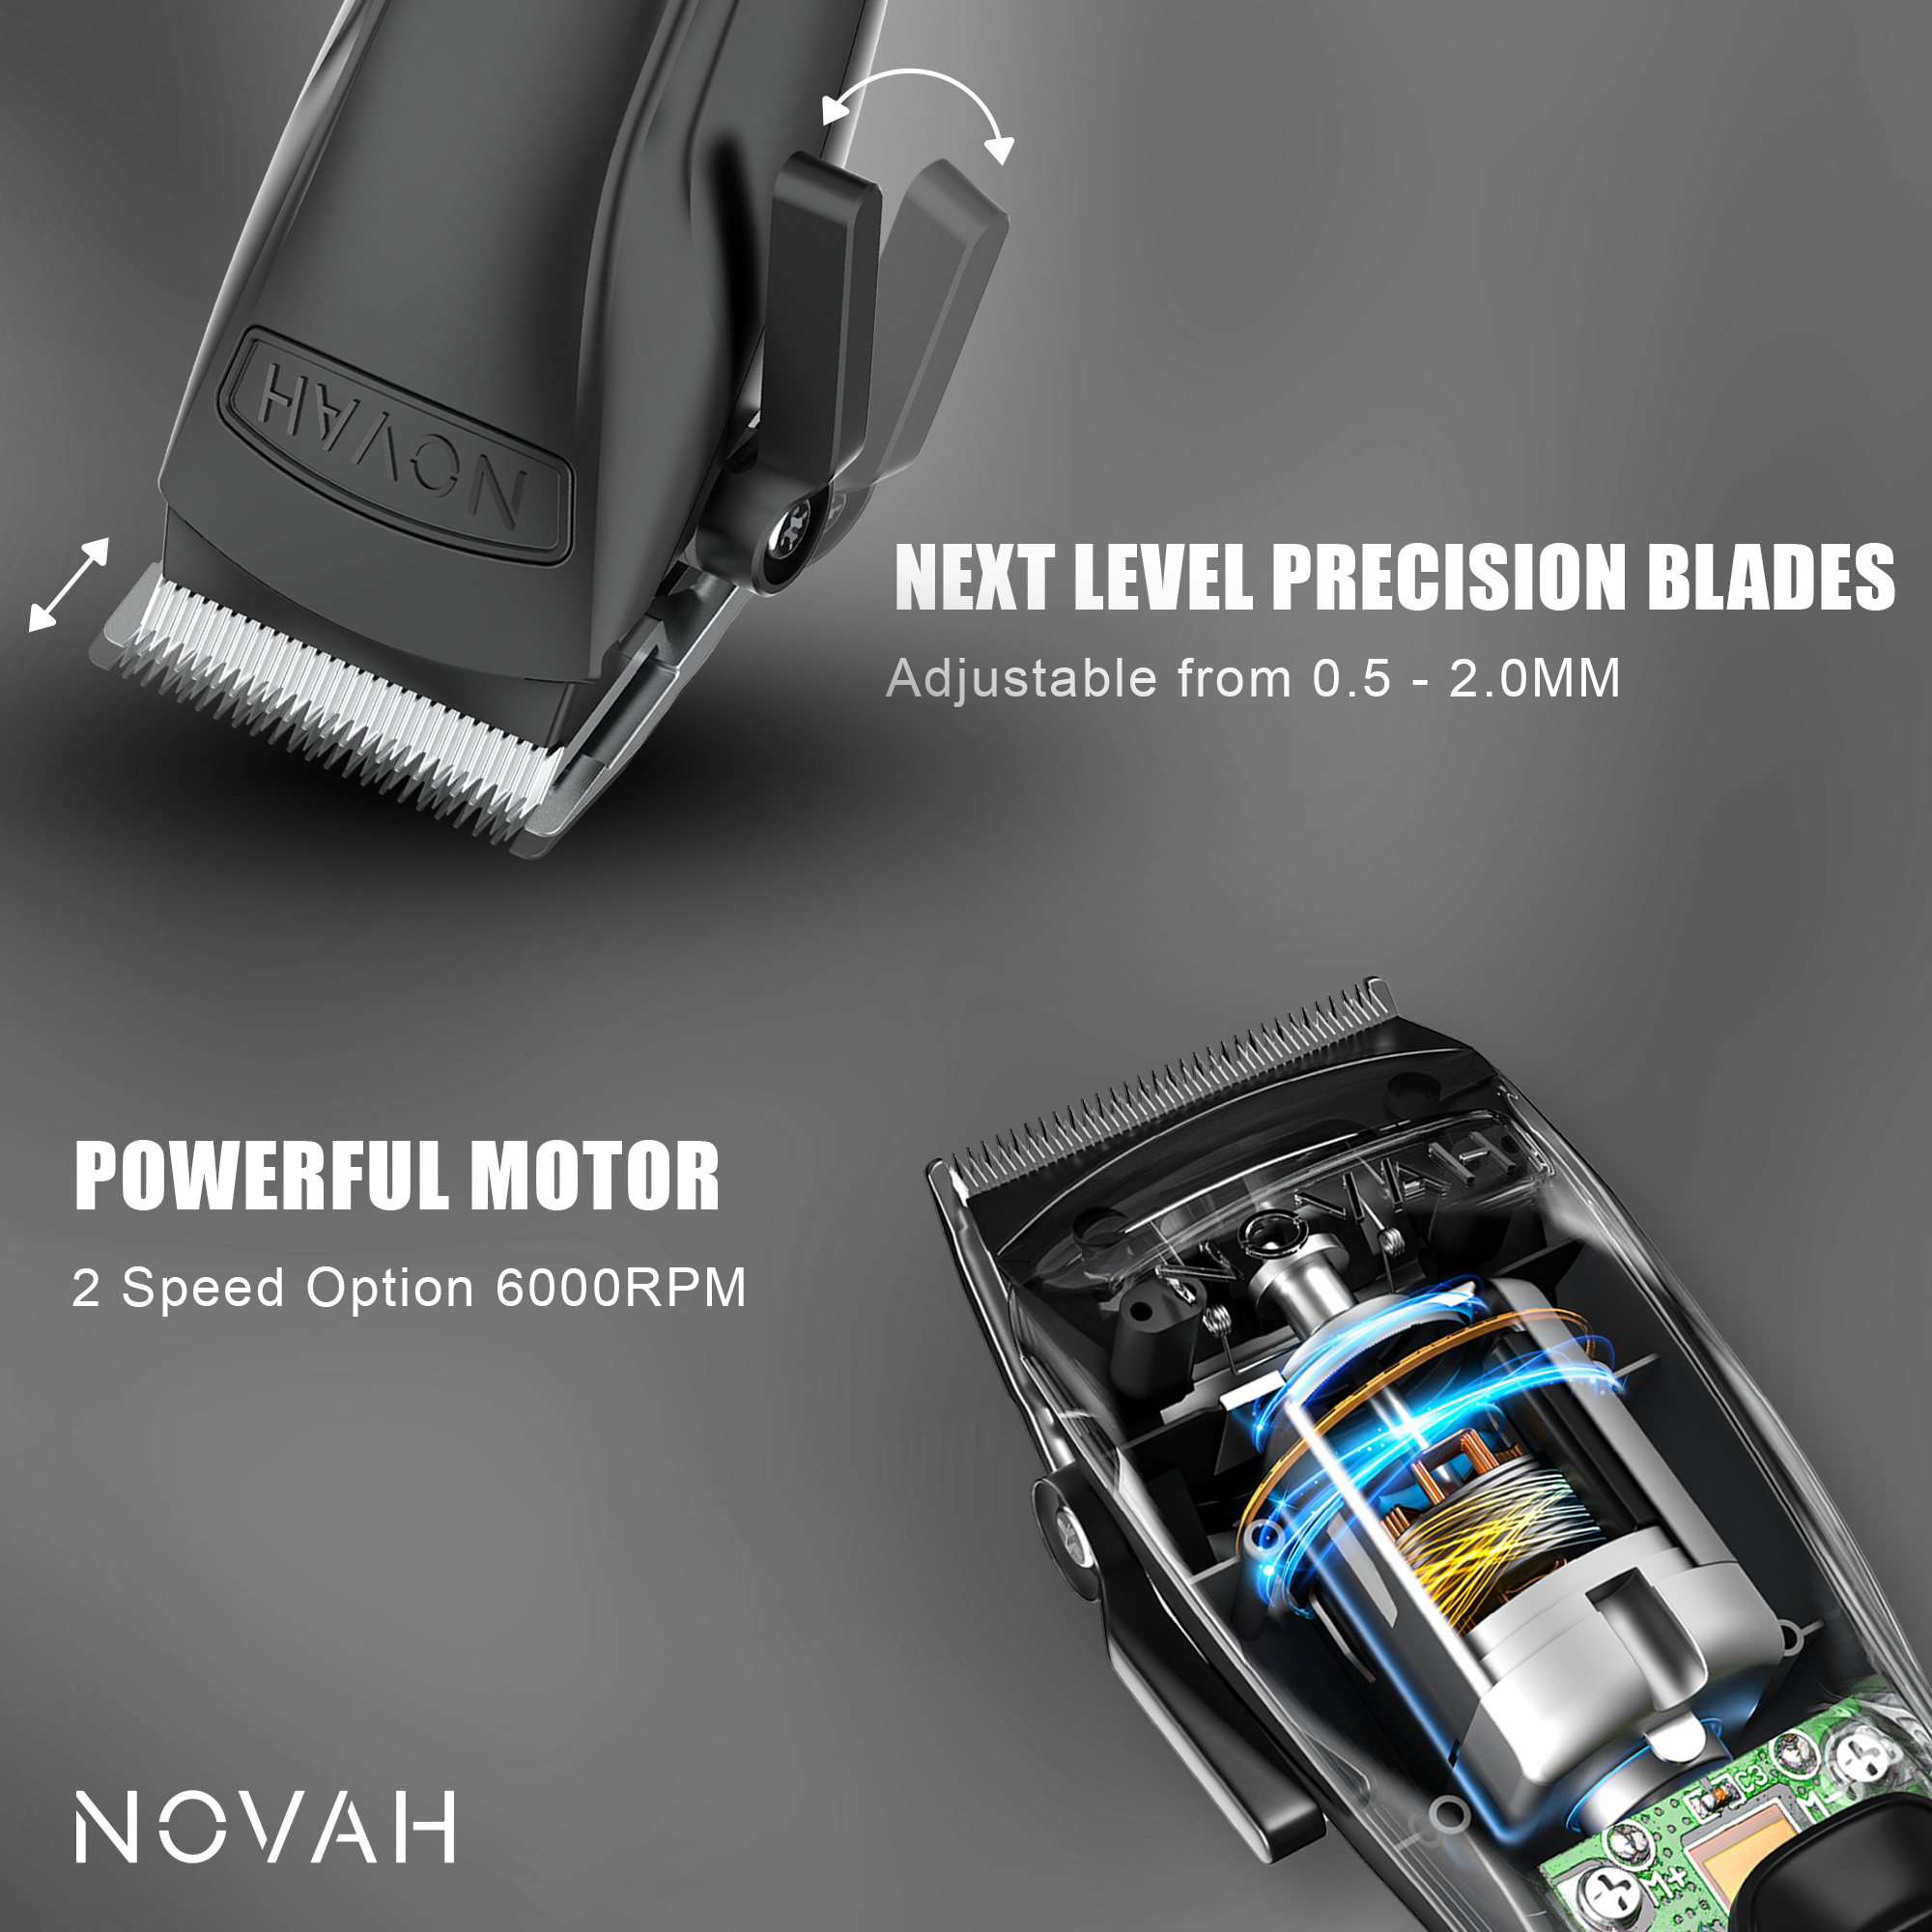 Novah Pro Clipper & Trimmer